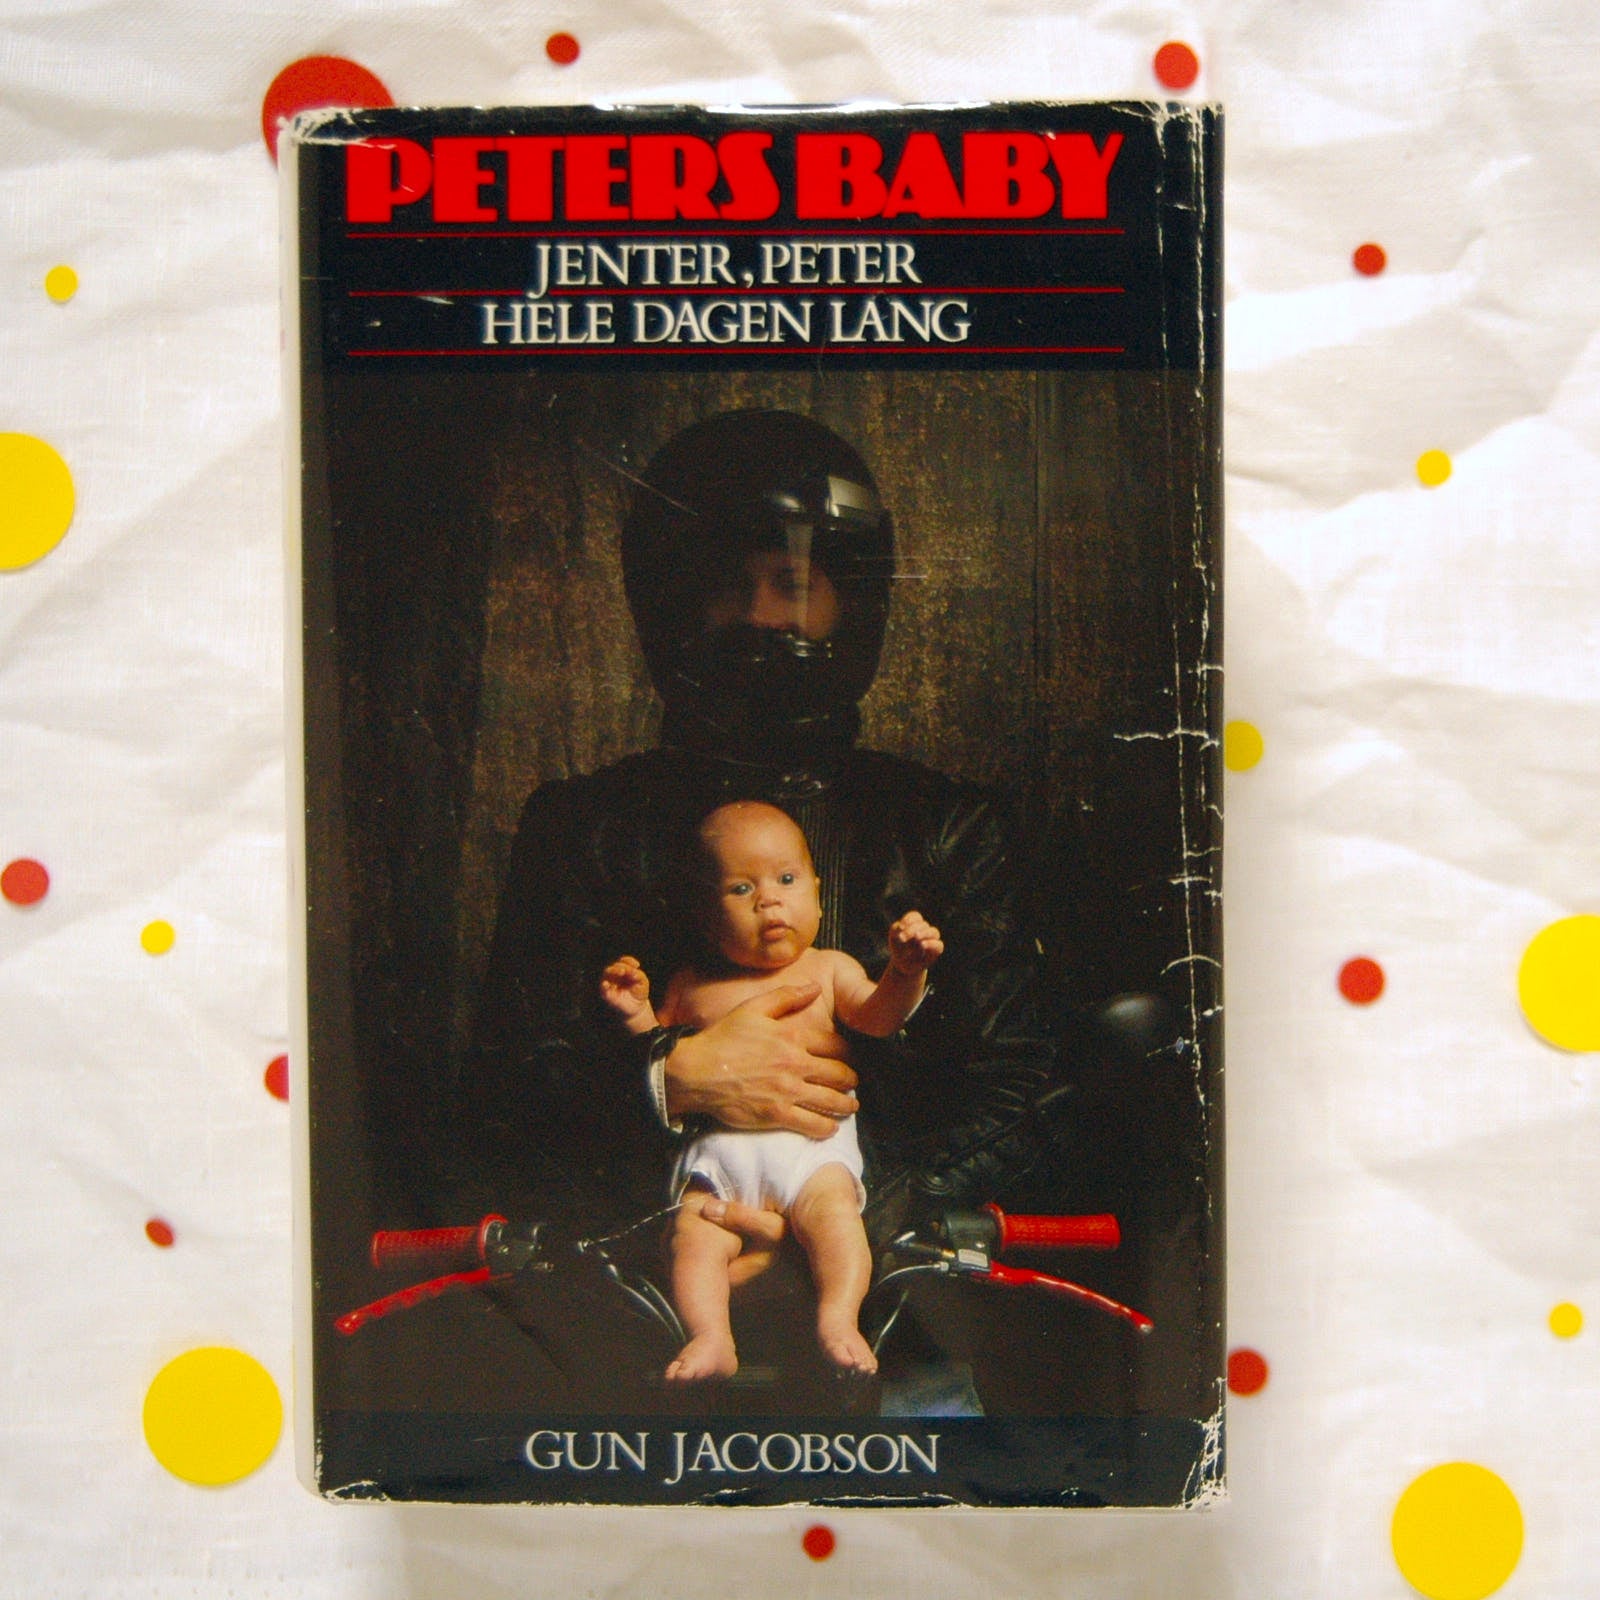 Peter baby /Jenter, Peter / Hele dagen lang av Gun Jacobson